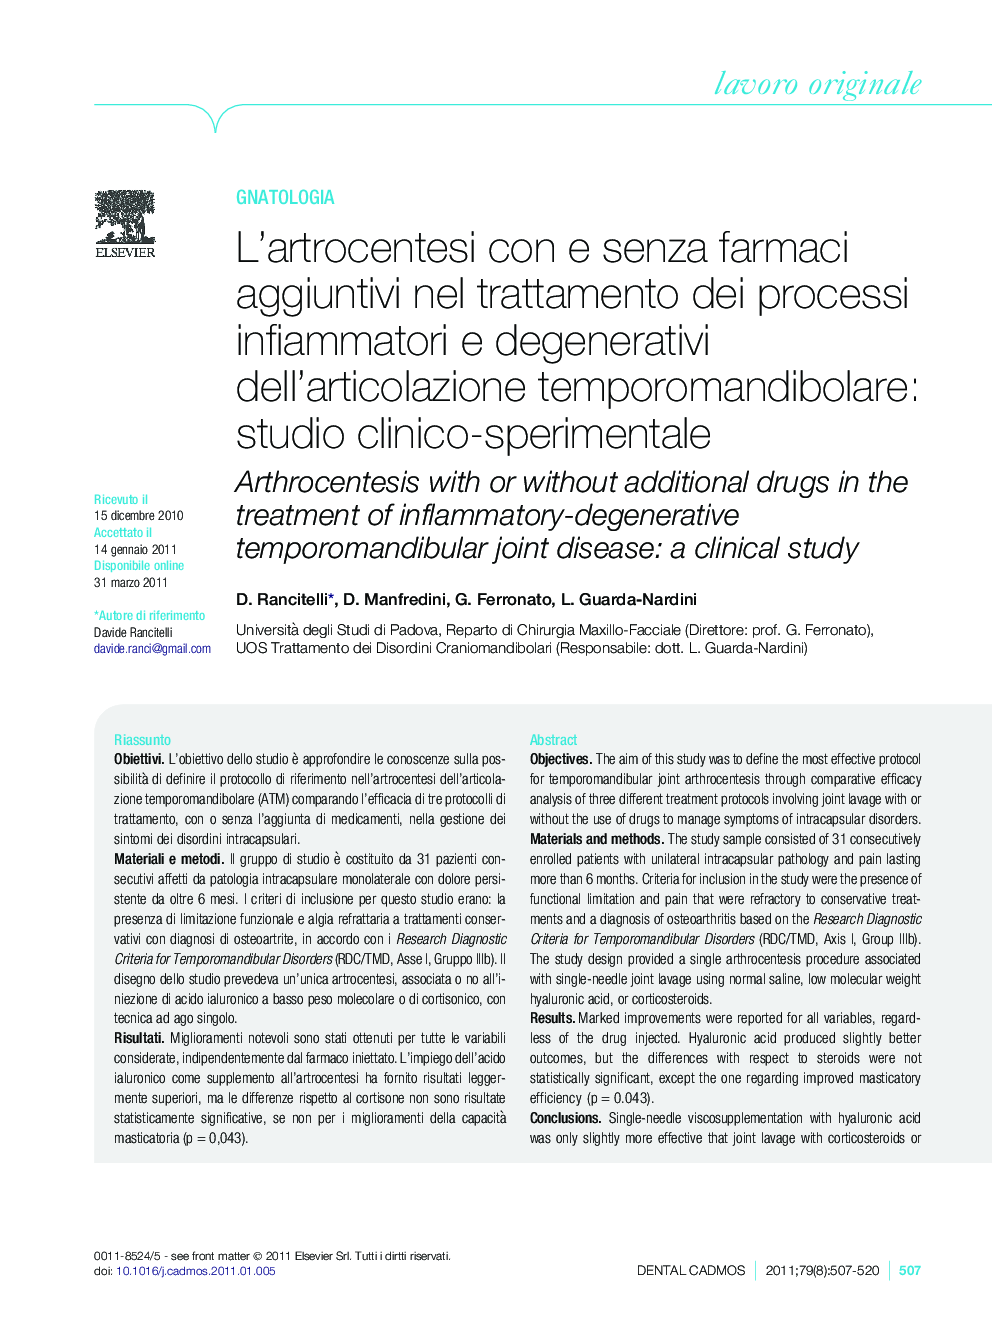 L'artrocentesi con e senza farmaci aggiuntivi nel trattamento dei processi infiammatori e degenerativi dell'articolazione temporomandibolare: studio clinico-sperimentale